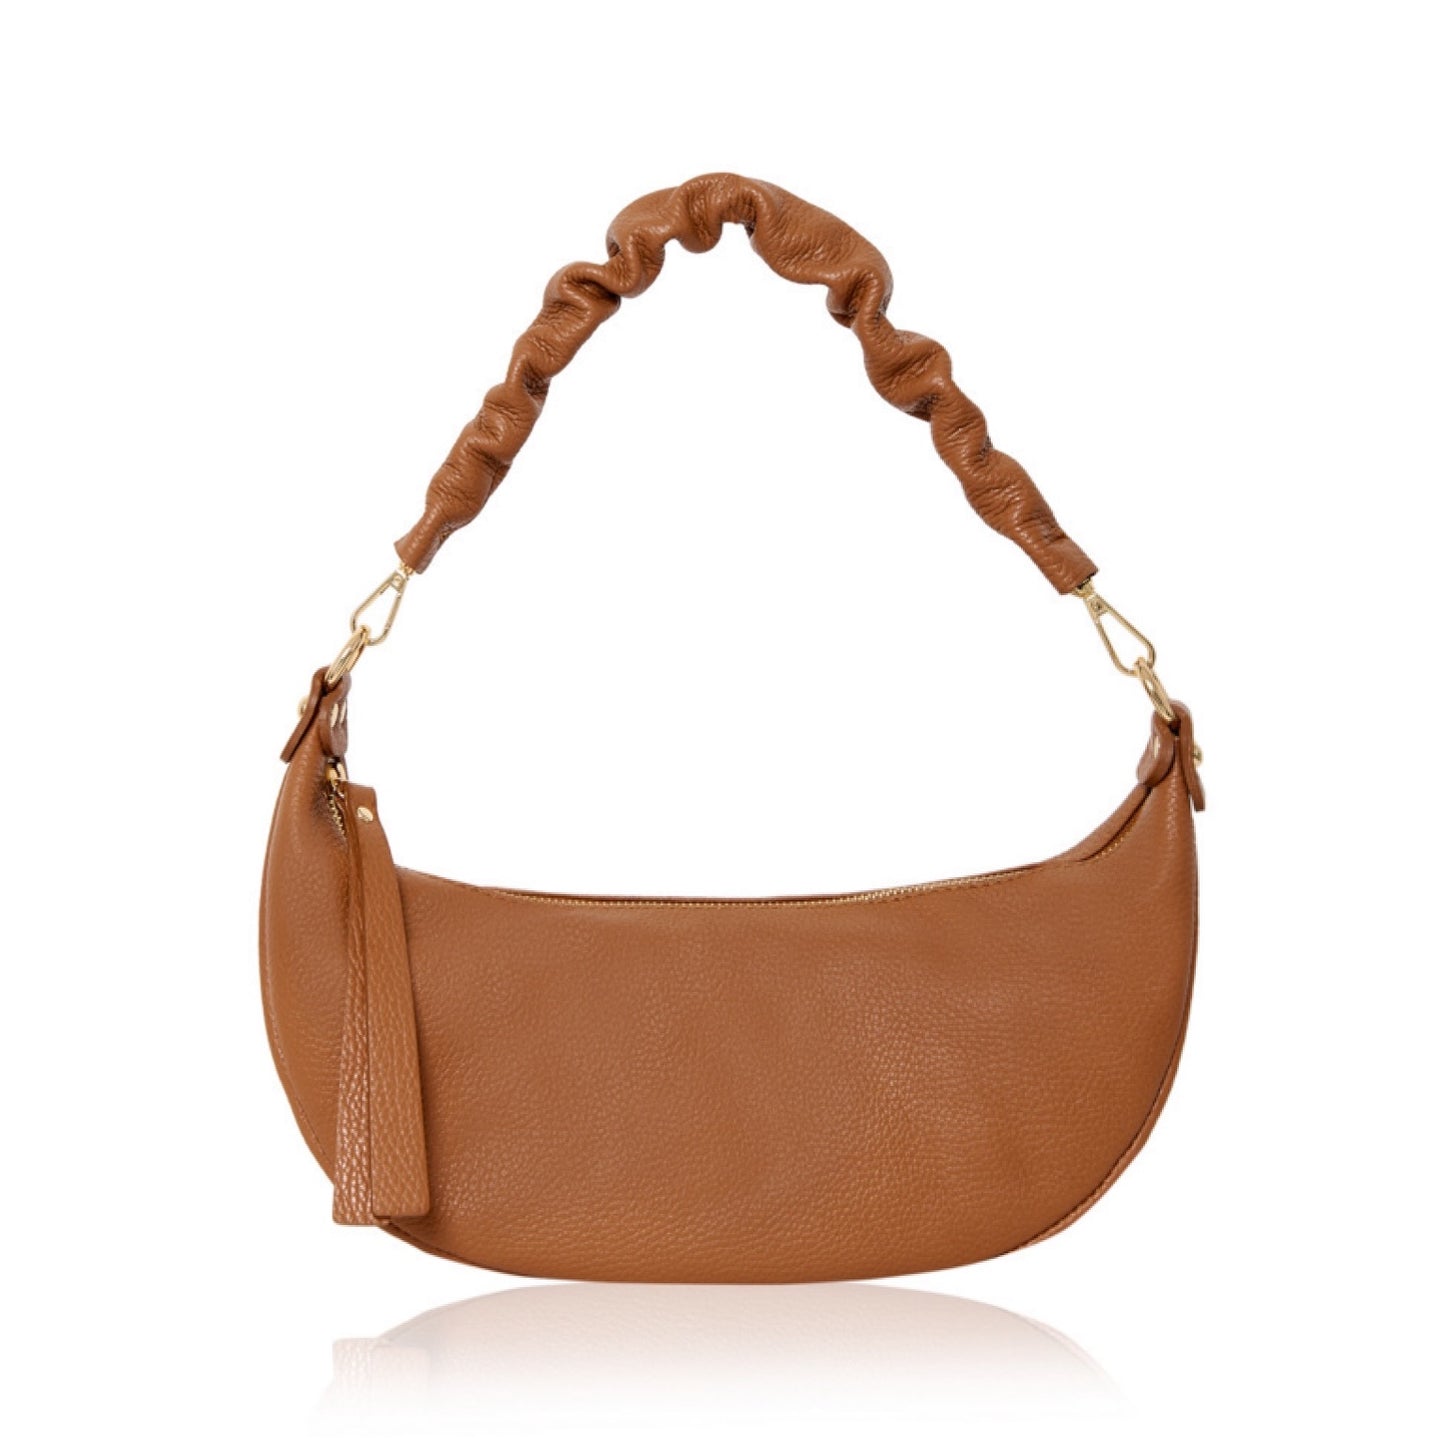 Tan leather bag, tan handbag